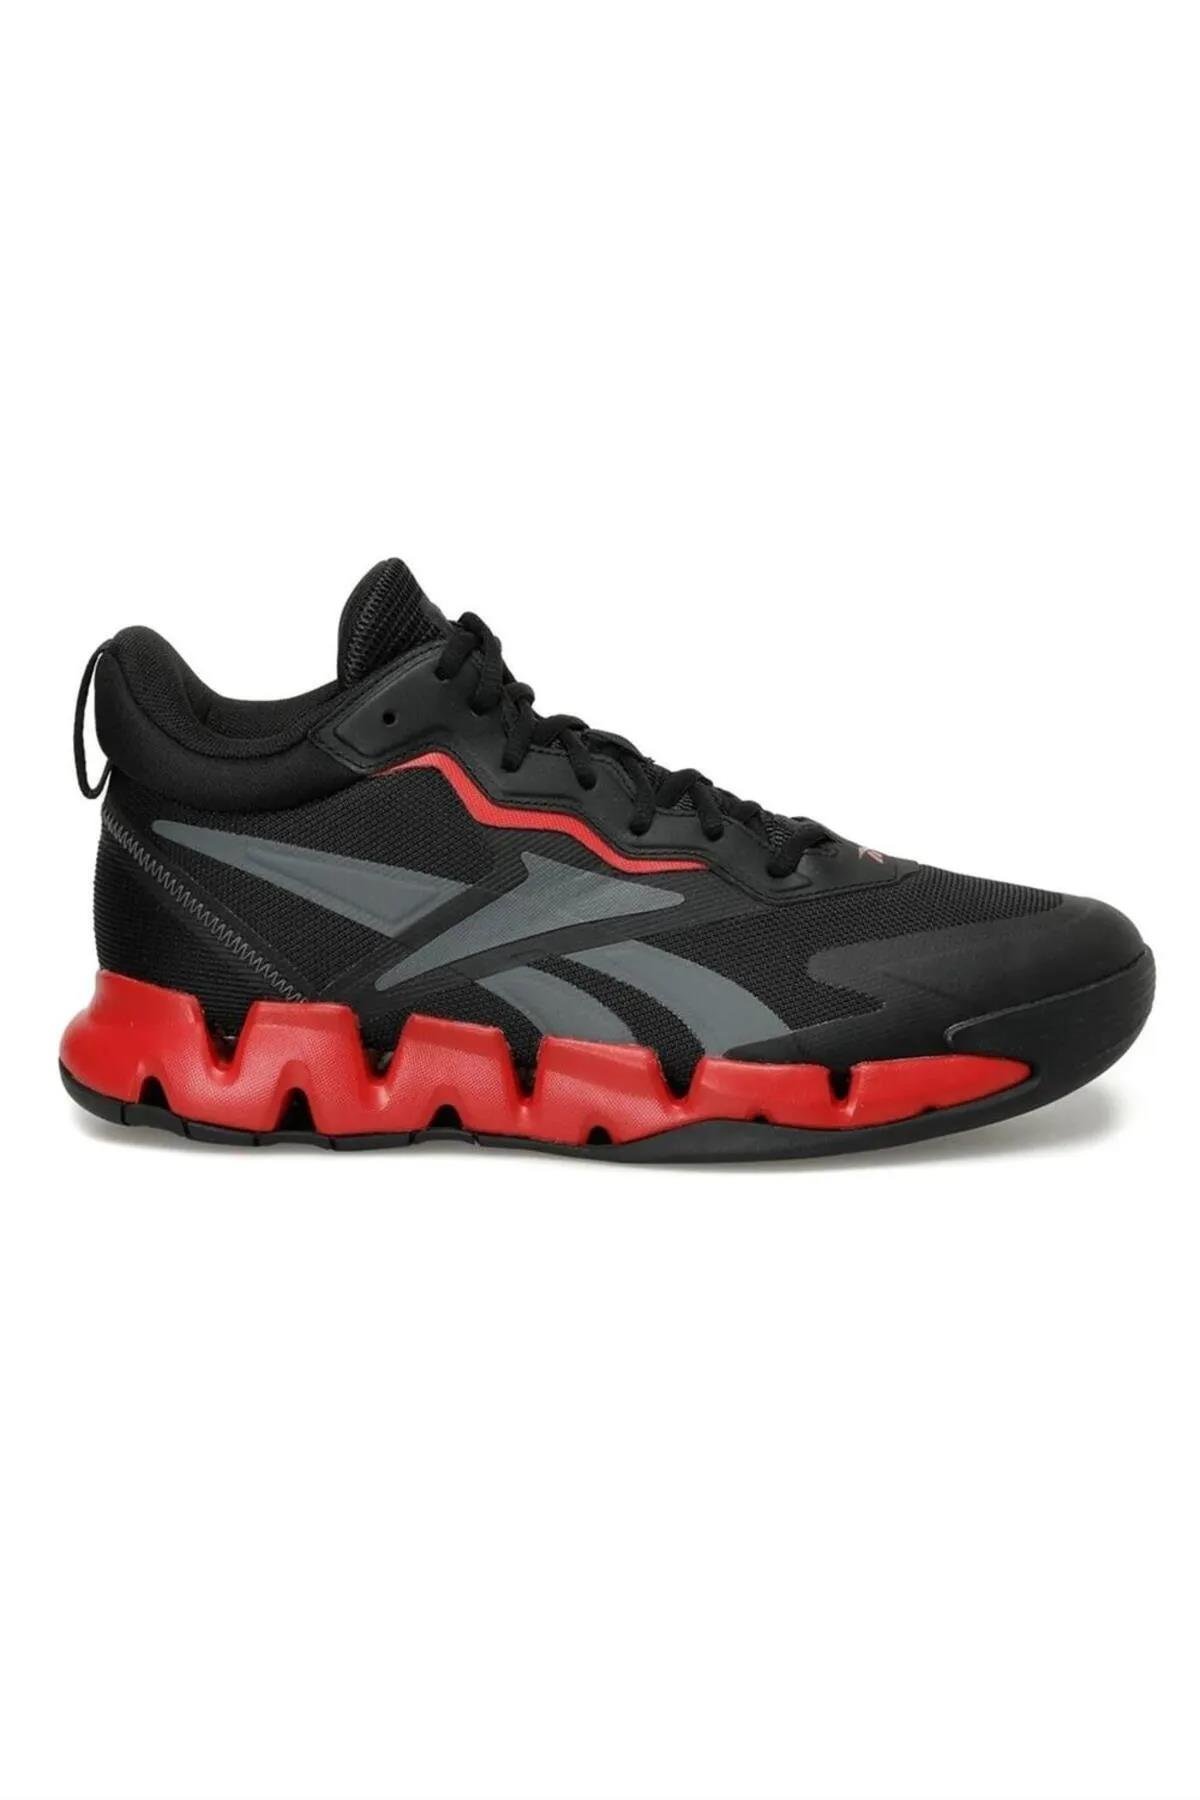 Reebok Zig Encore Erkek Spor Ayakkabısı IF5530-X | Gözde Spor